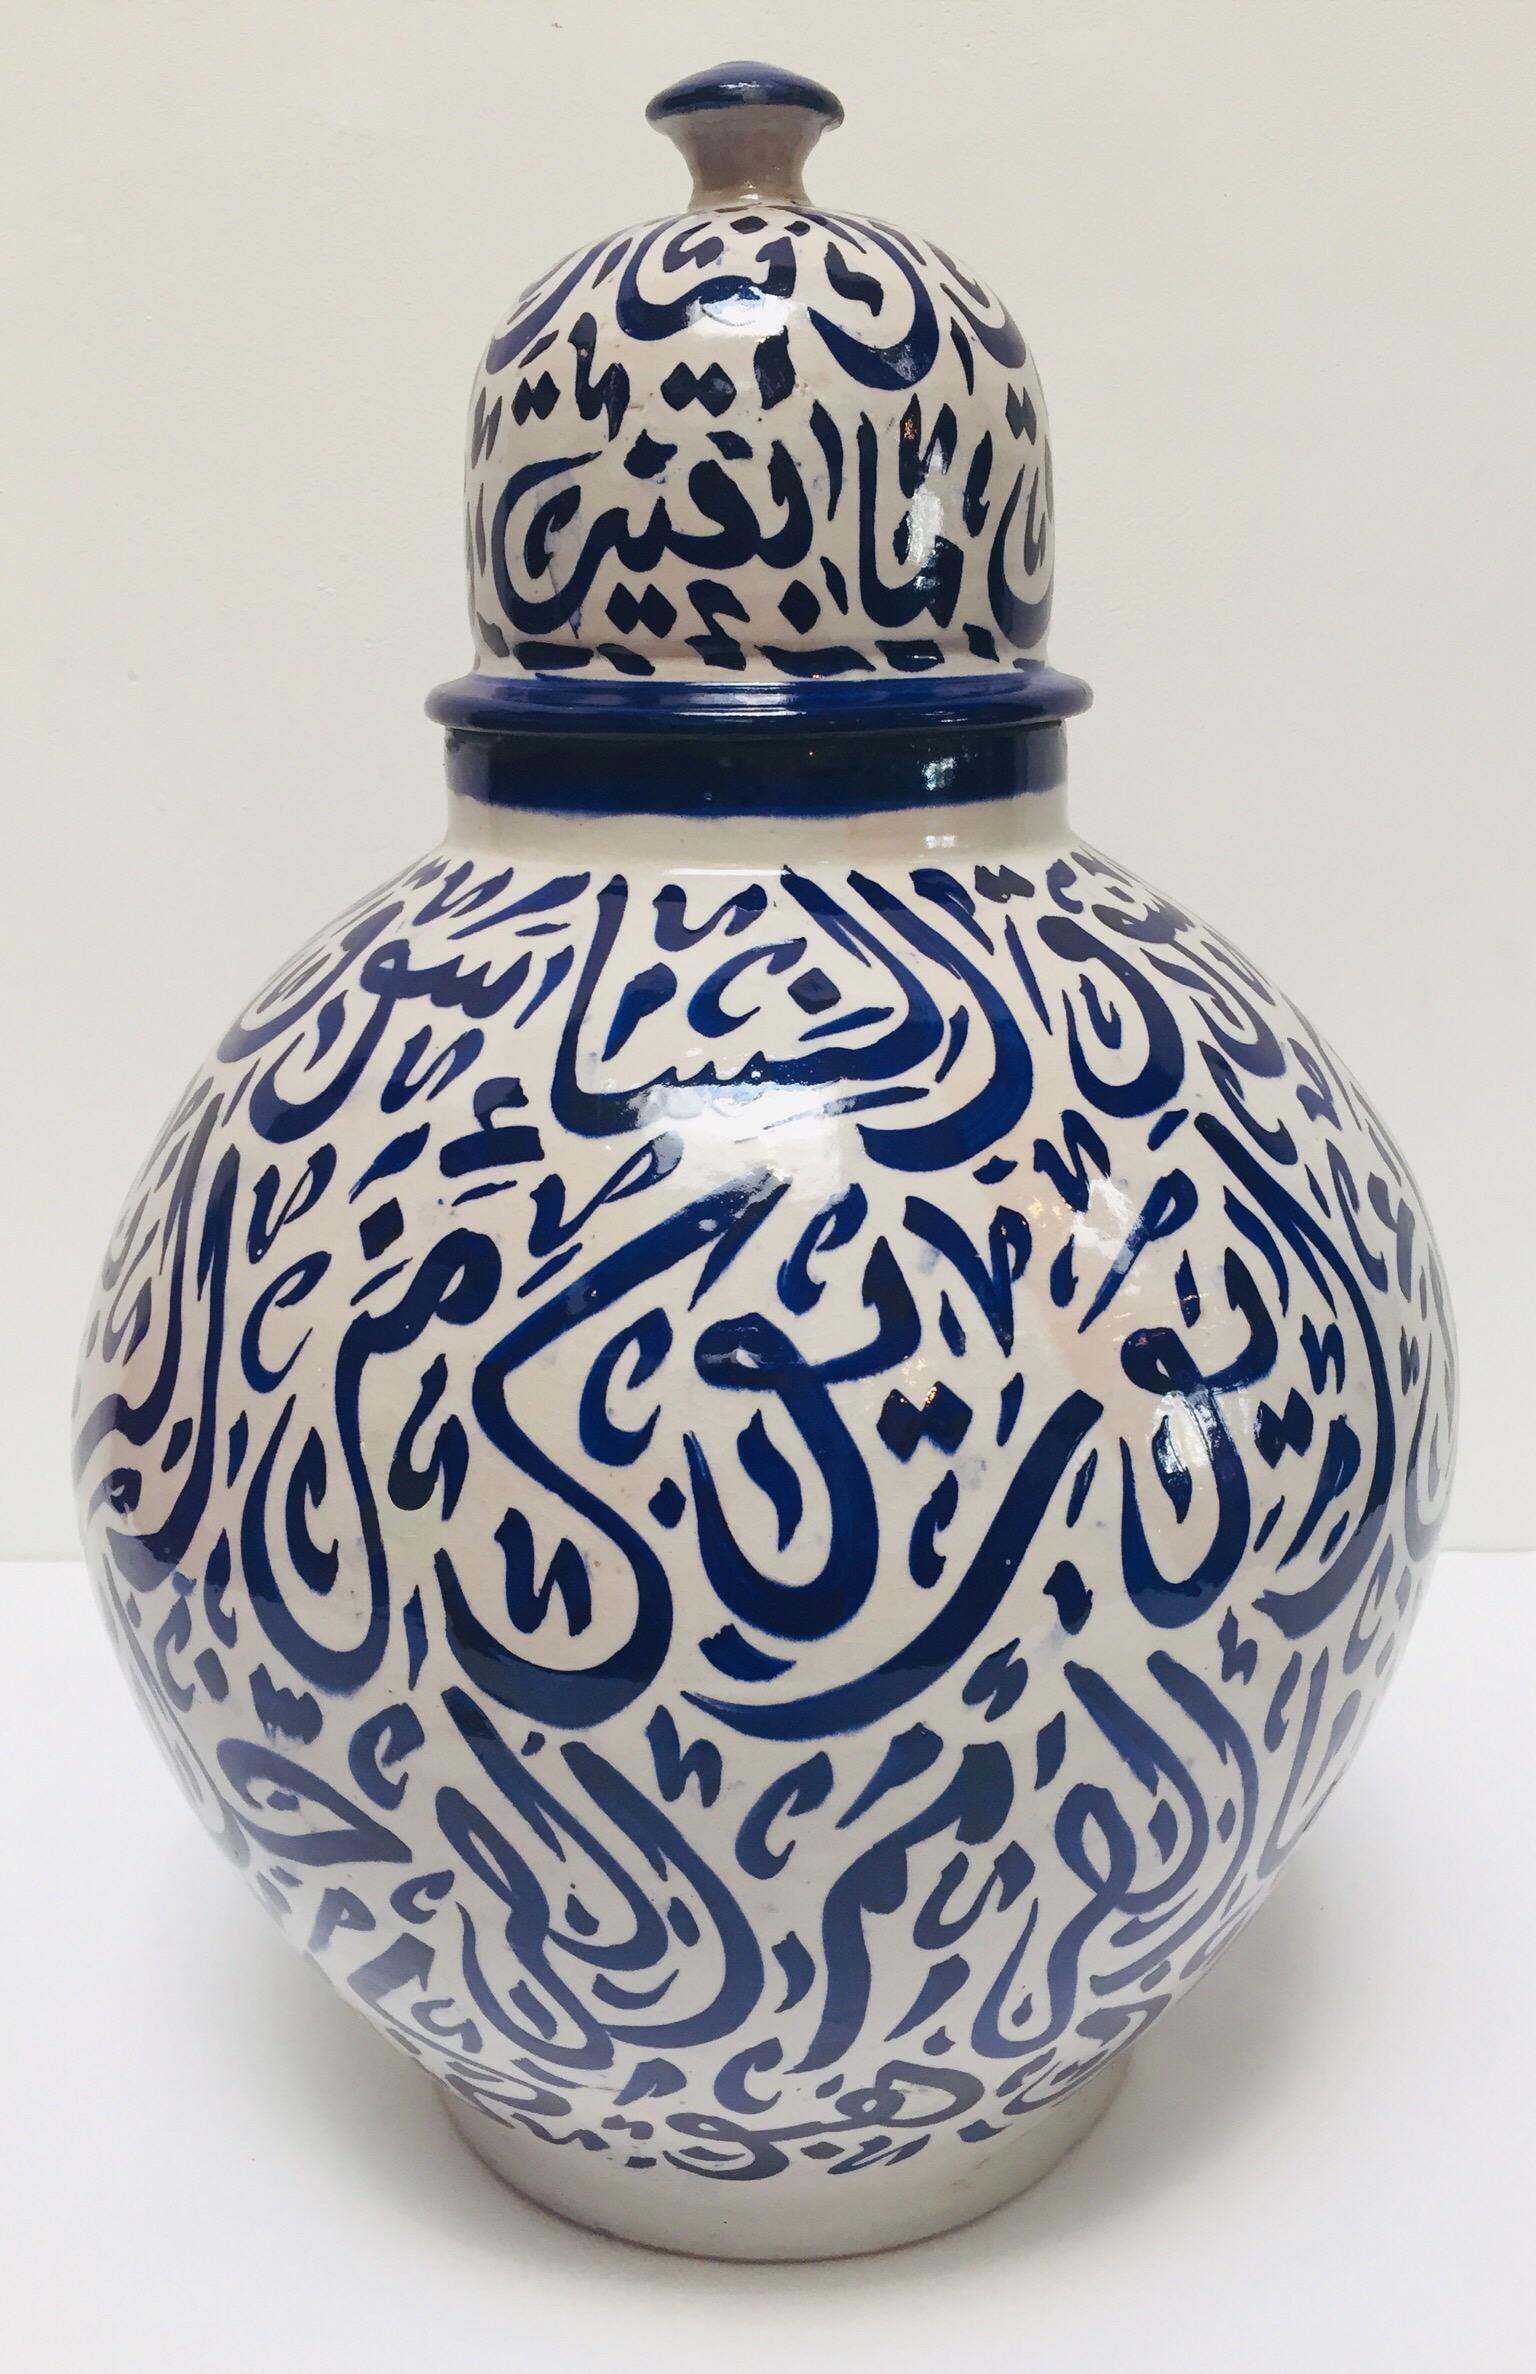 Große marokkanische glasierte königsblaue Keramikurne mit Deckel aus Fez.
Vintage Keramik im maurischen Stil, handgefertigt und handbemalt mit arabischer Kalligraphie.
Diese Art von Kunstschrift, die kalligraphisch aussieht, wird Lettrismus genannt,